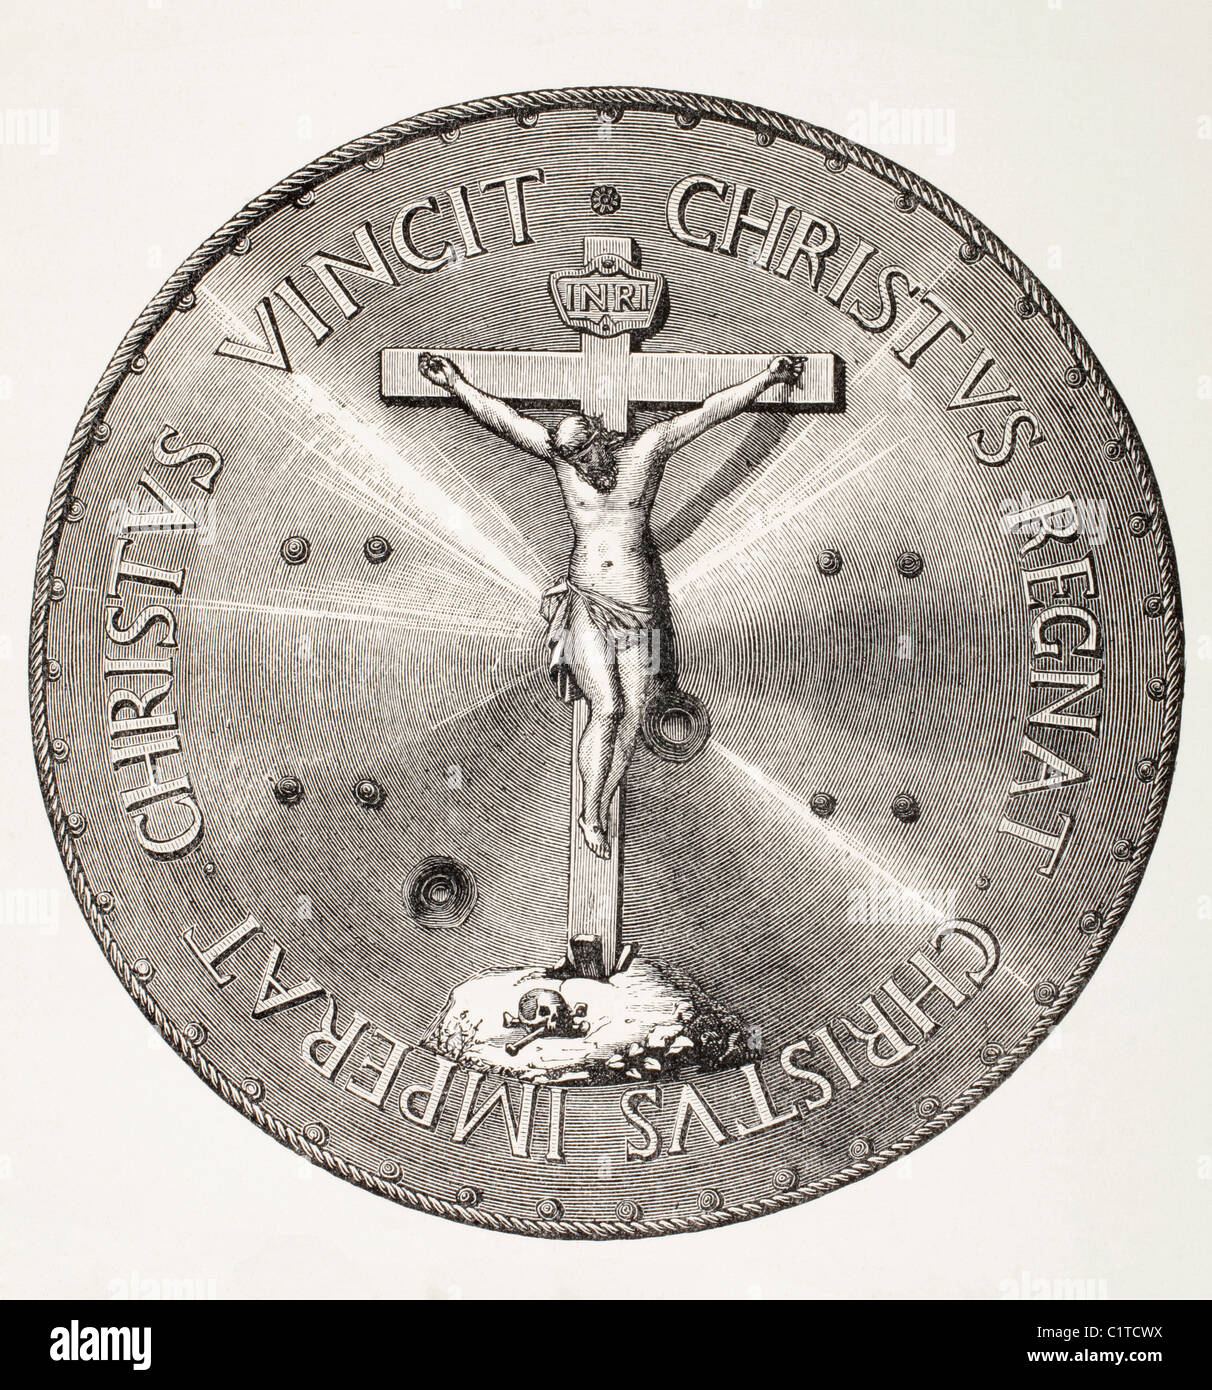 Eisen Schild Papst Pius v., Don John von Österreich für seine Verdienste um die Christenheit nach dem Sieg bei Lepanto, 1571 vorgelegt. Stockfoto